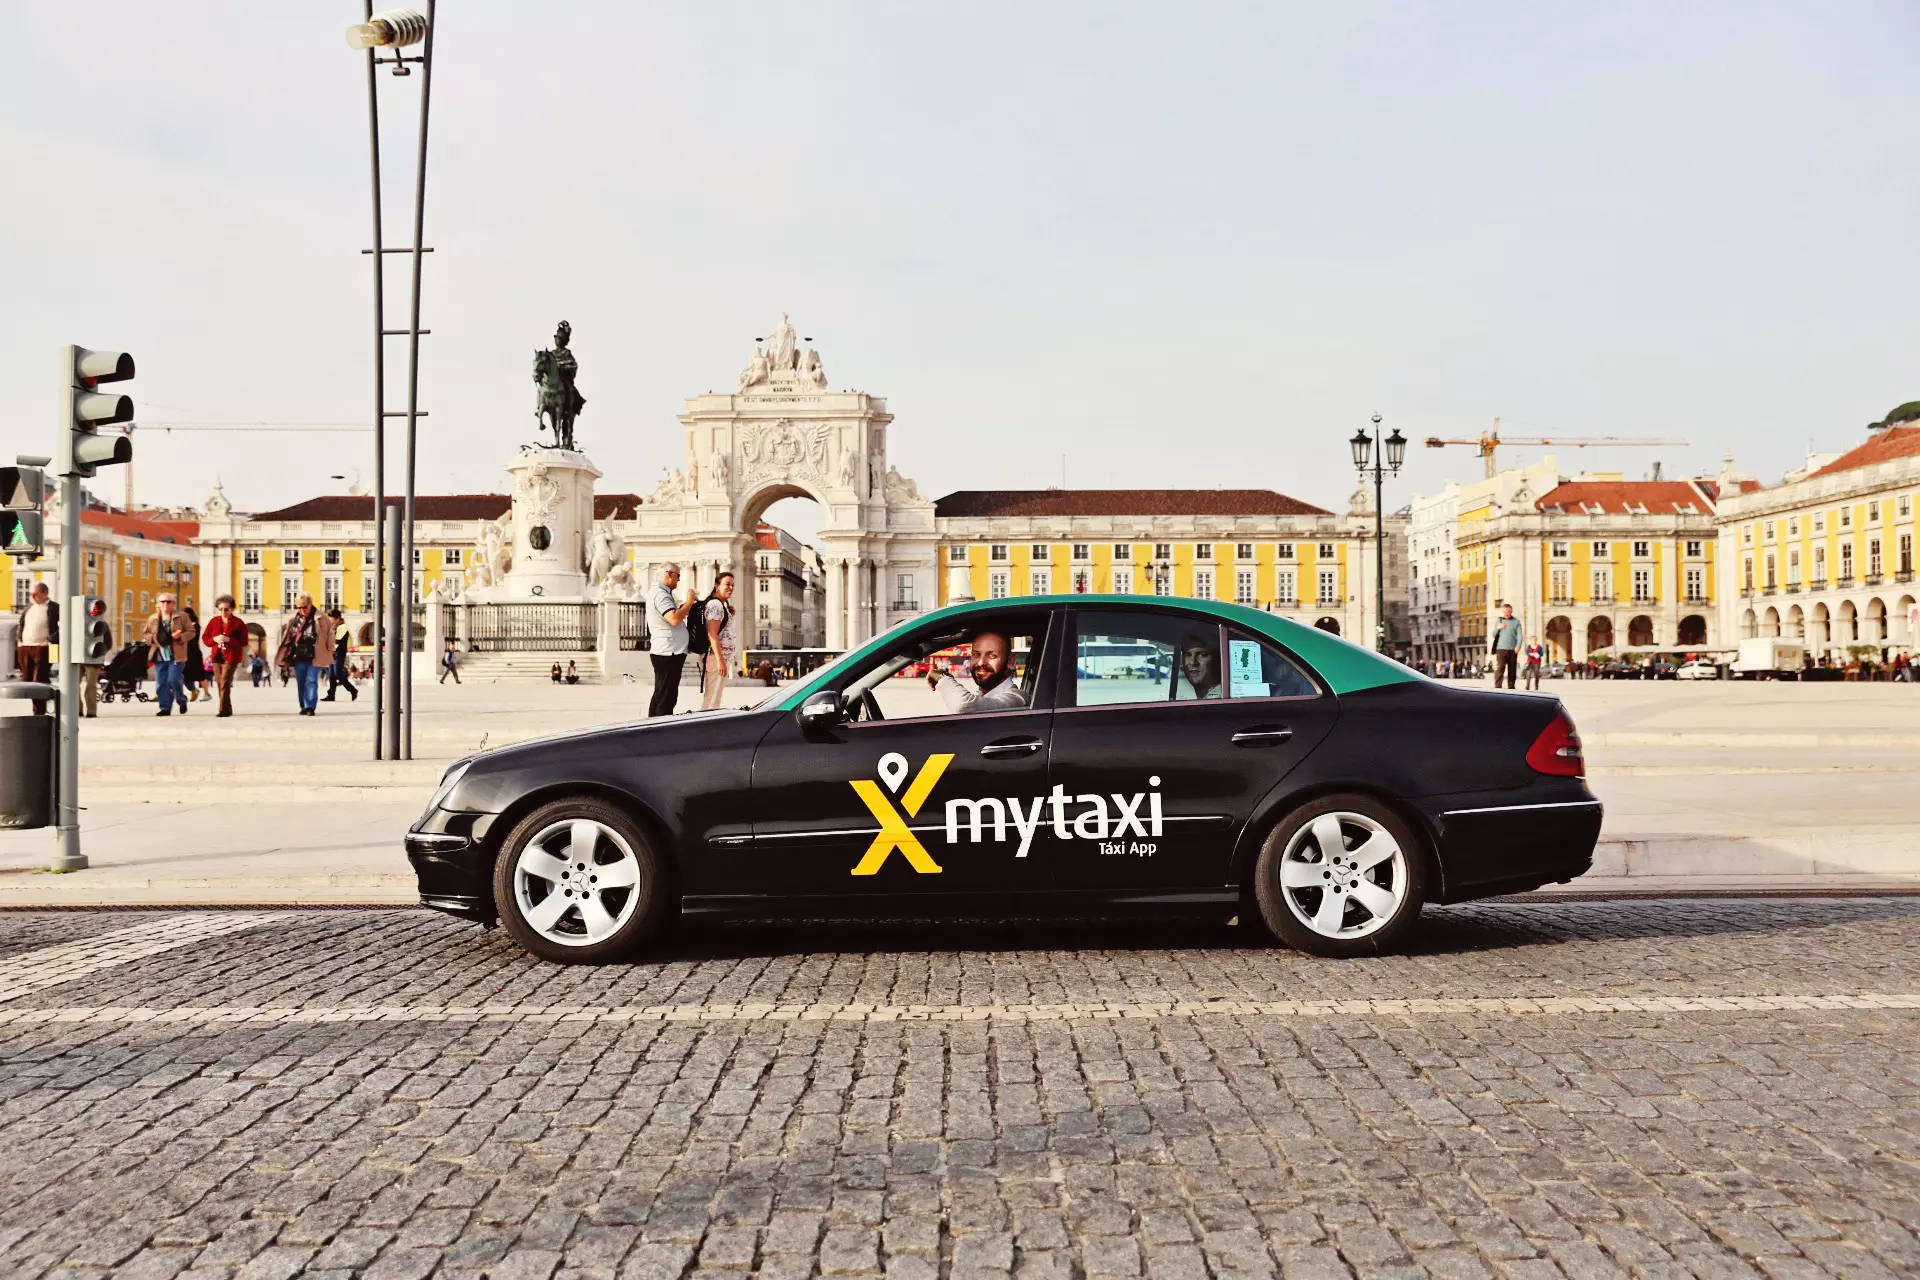 Телефон бизнес такси. Европейское такси. Бизнес такси машины. Такси бизнес класса. Машины бизнес класса такси.